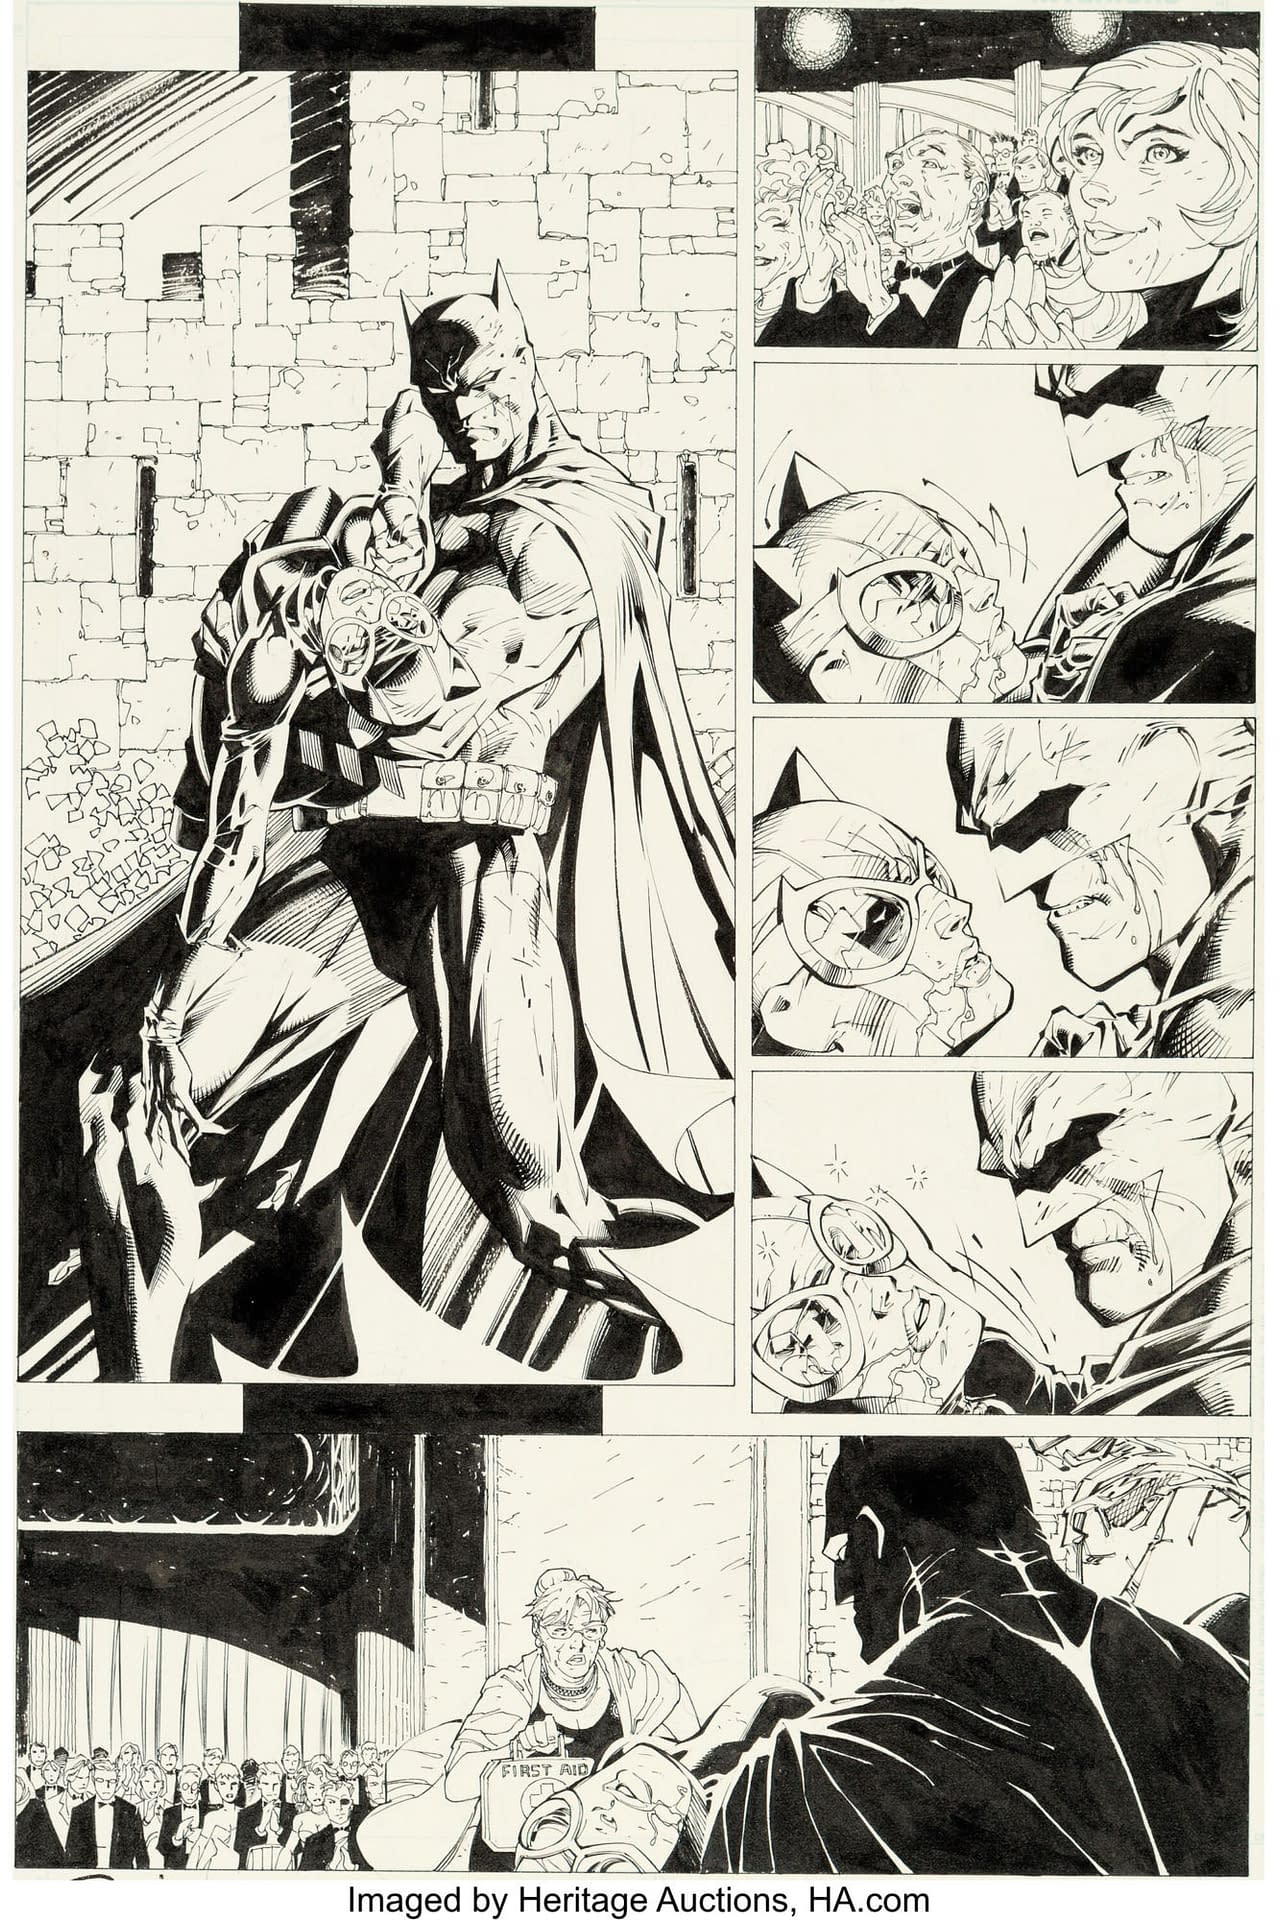 Jim Lee's X-Men, Batman & The Boys Original Artwork At Auction